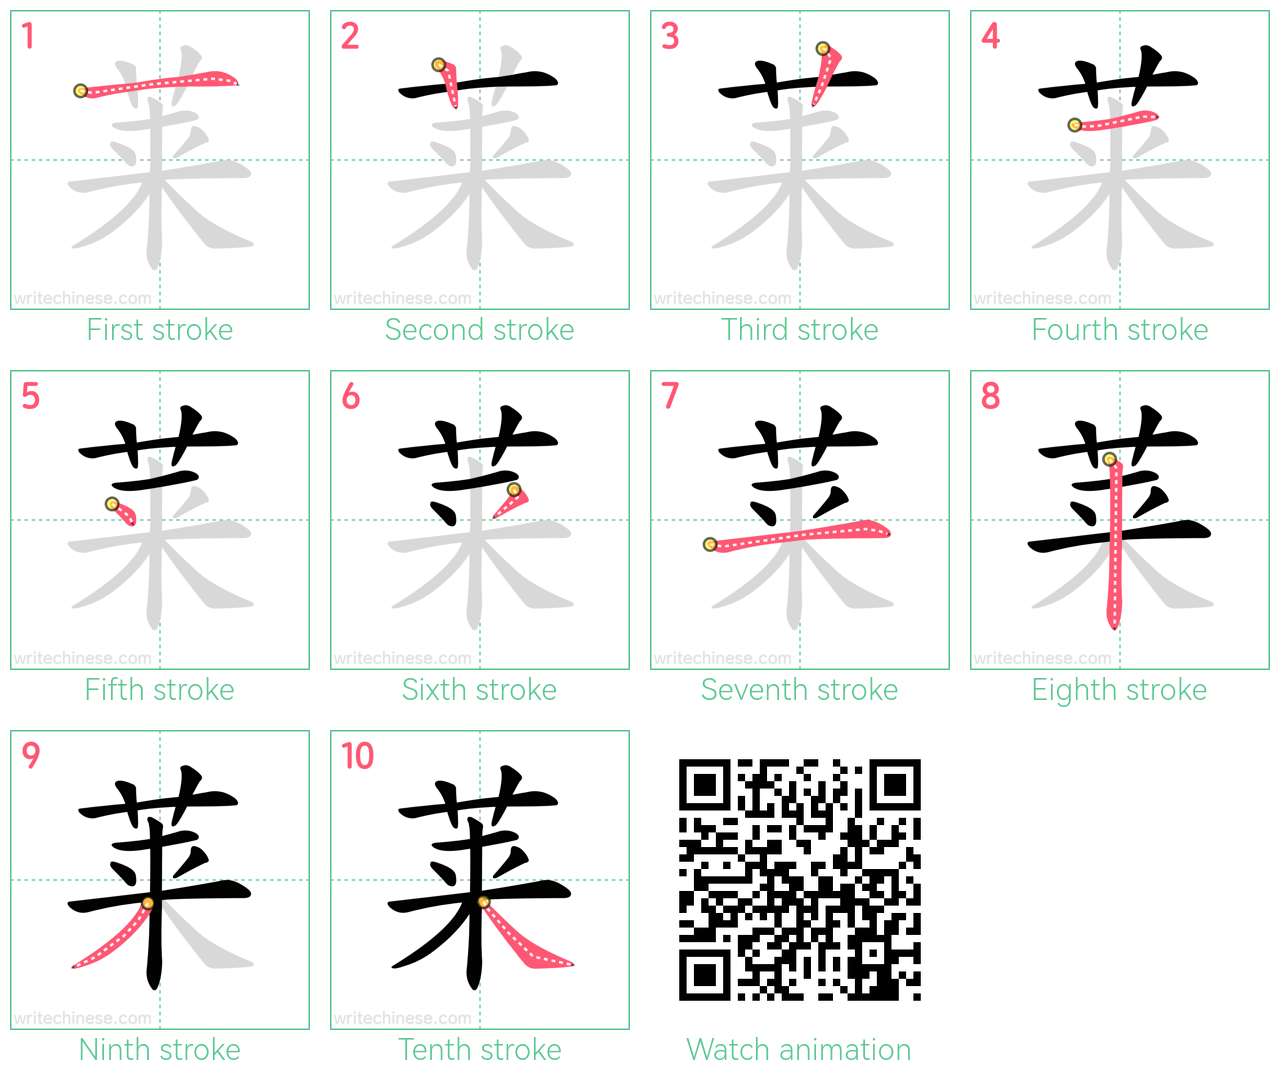 莱 step-by-step stroke order diagrams